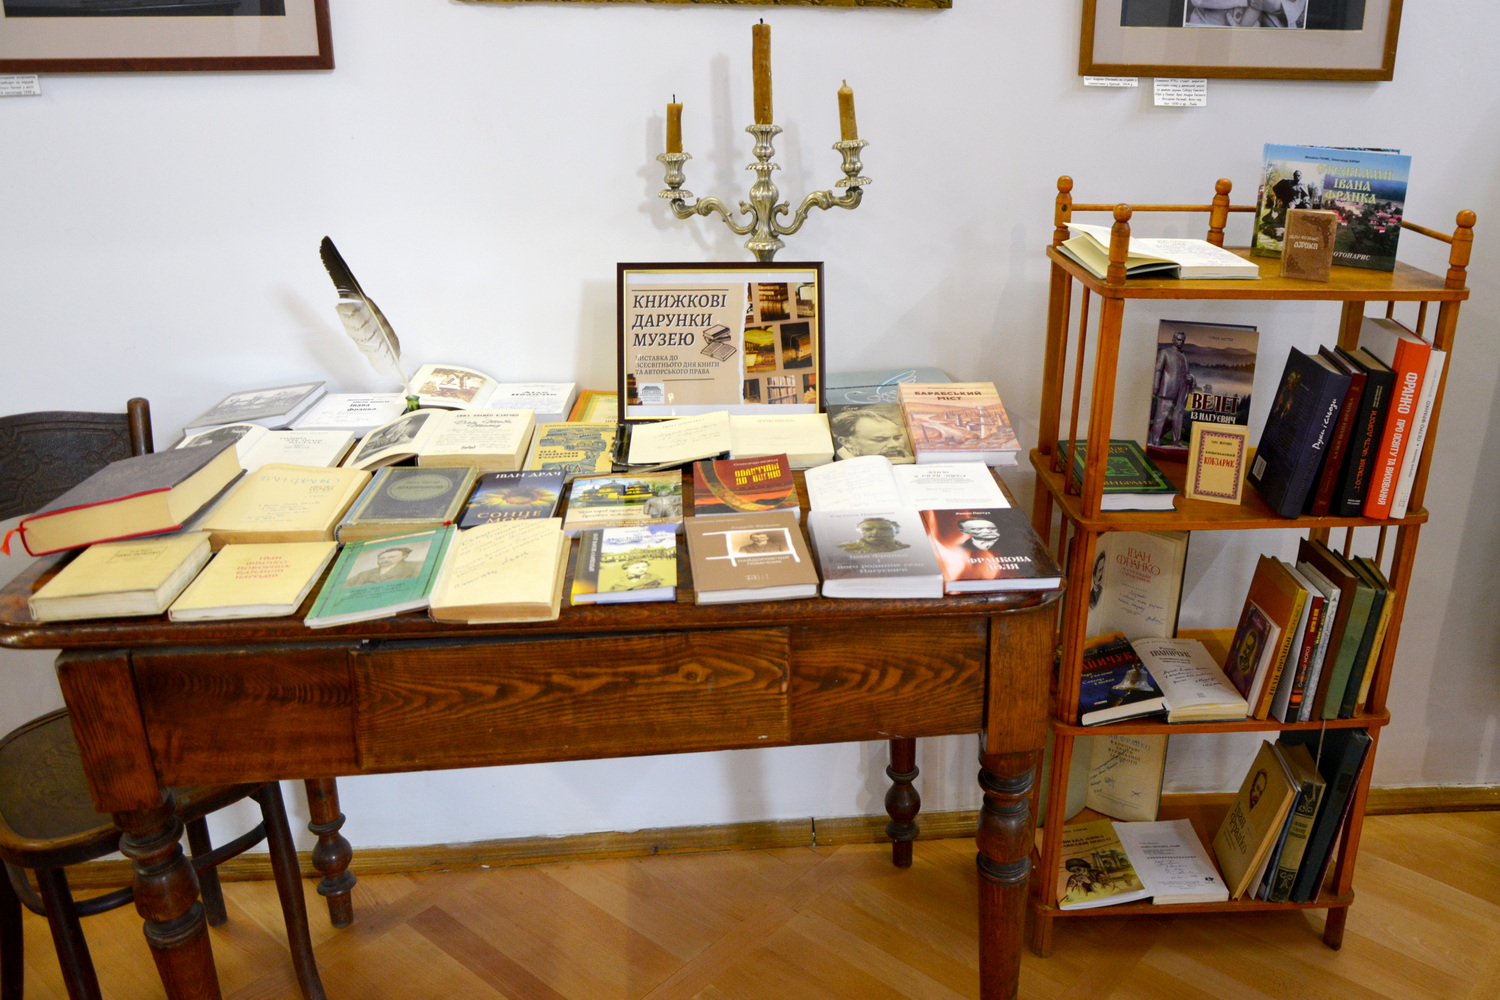 Книжкова виставка «Книжкові дарунки музею» до Міжнародного дня книги